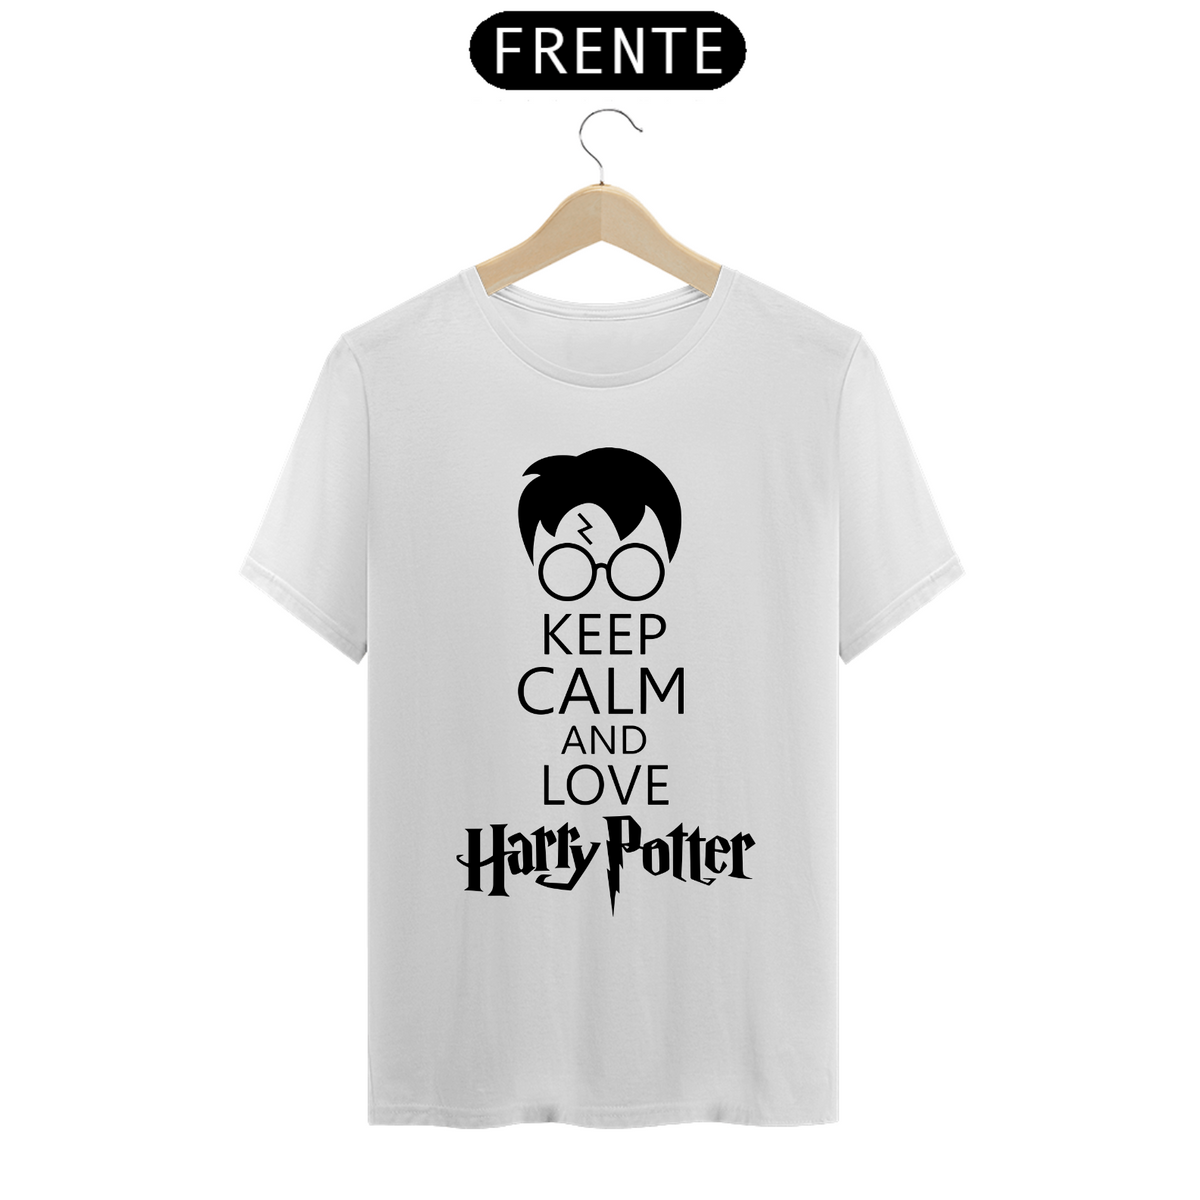 Nome do produto: Mantenha a calma e ame Harry Potter